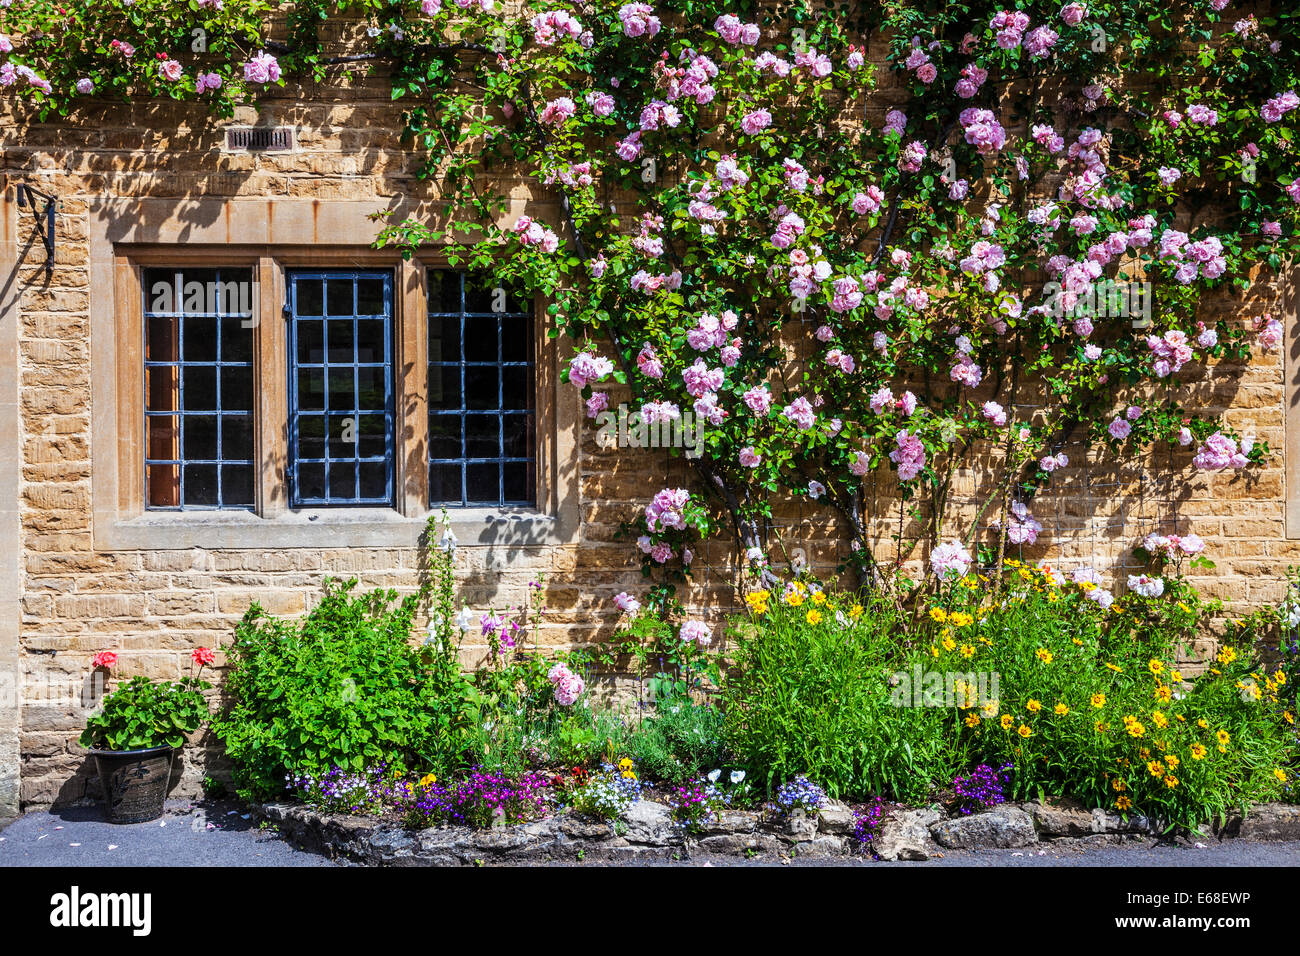 Cabaña de piedra de Cotswold frente con geminadas, vidrieras emplomadas, rambling rosas y un bonito jardín en la parte delantera. Foto de stock